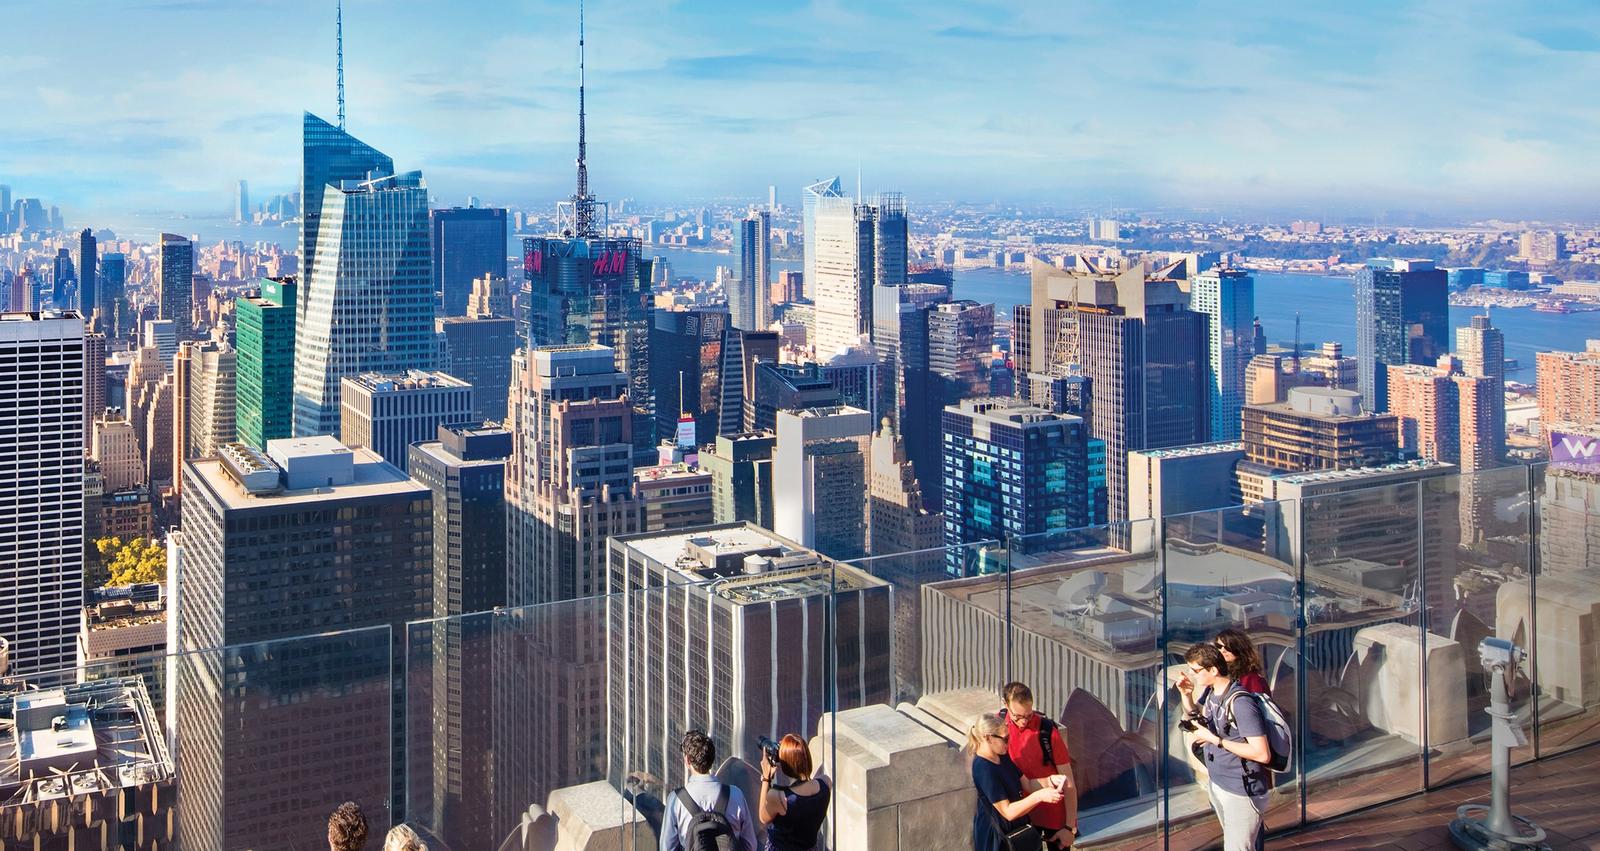 トップ・オブ・ザ・ロック展望台から見たミッドタウンとロウワーマンハッタン、眼下に広がるニューヨーク・シティの街並み。